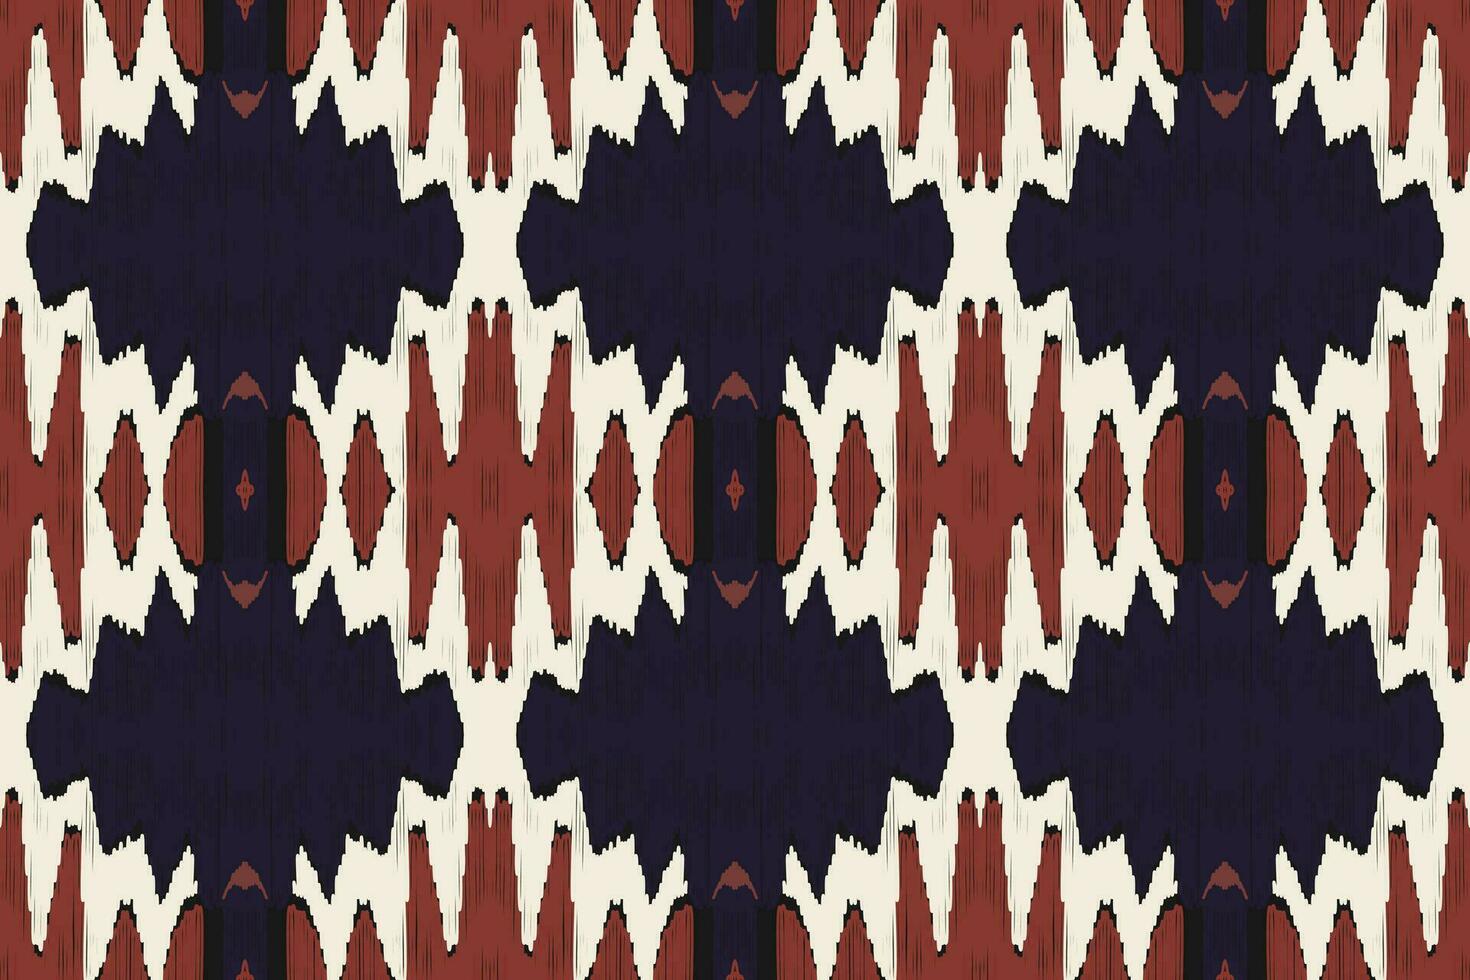 motiv ikat paisley broderi bakgrund. ikat mönster geometrisk etnisk orientalisk mönster traditionell.aztec stil abstrakt vektor illustration.design för textur, tyg, kläder, inslagning, sarong.